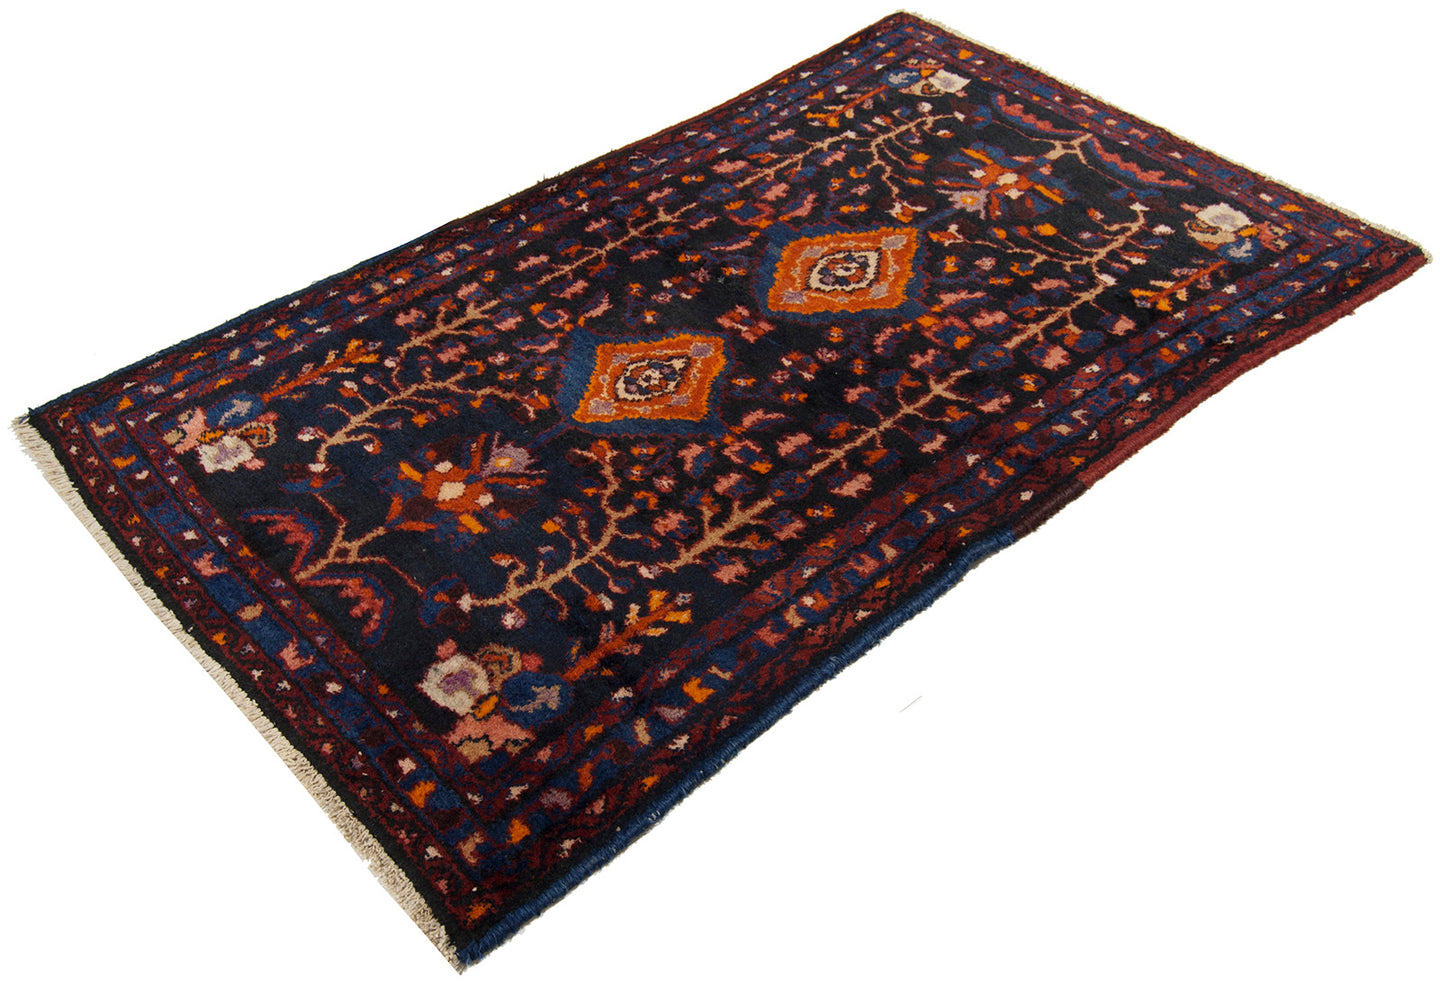 134x80 CM Original Hand Made Carpet Tapis Teppich Alfombra Rugs